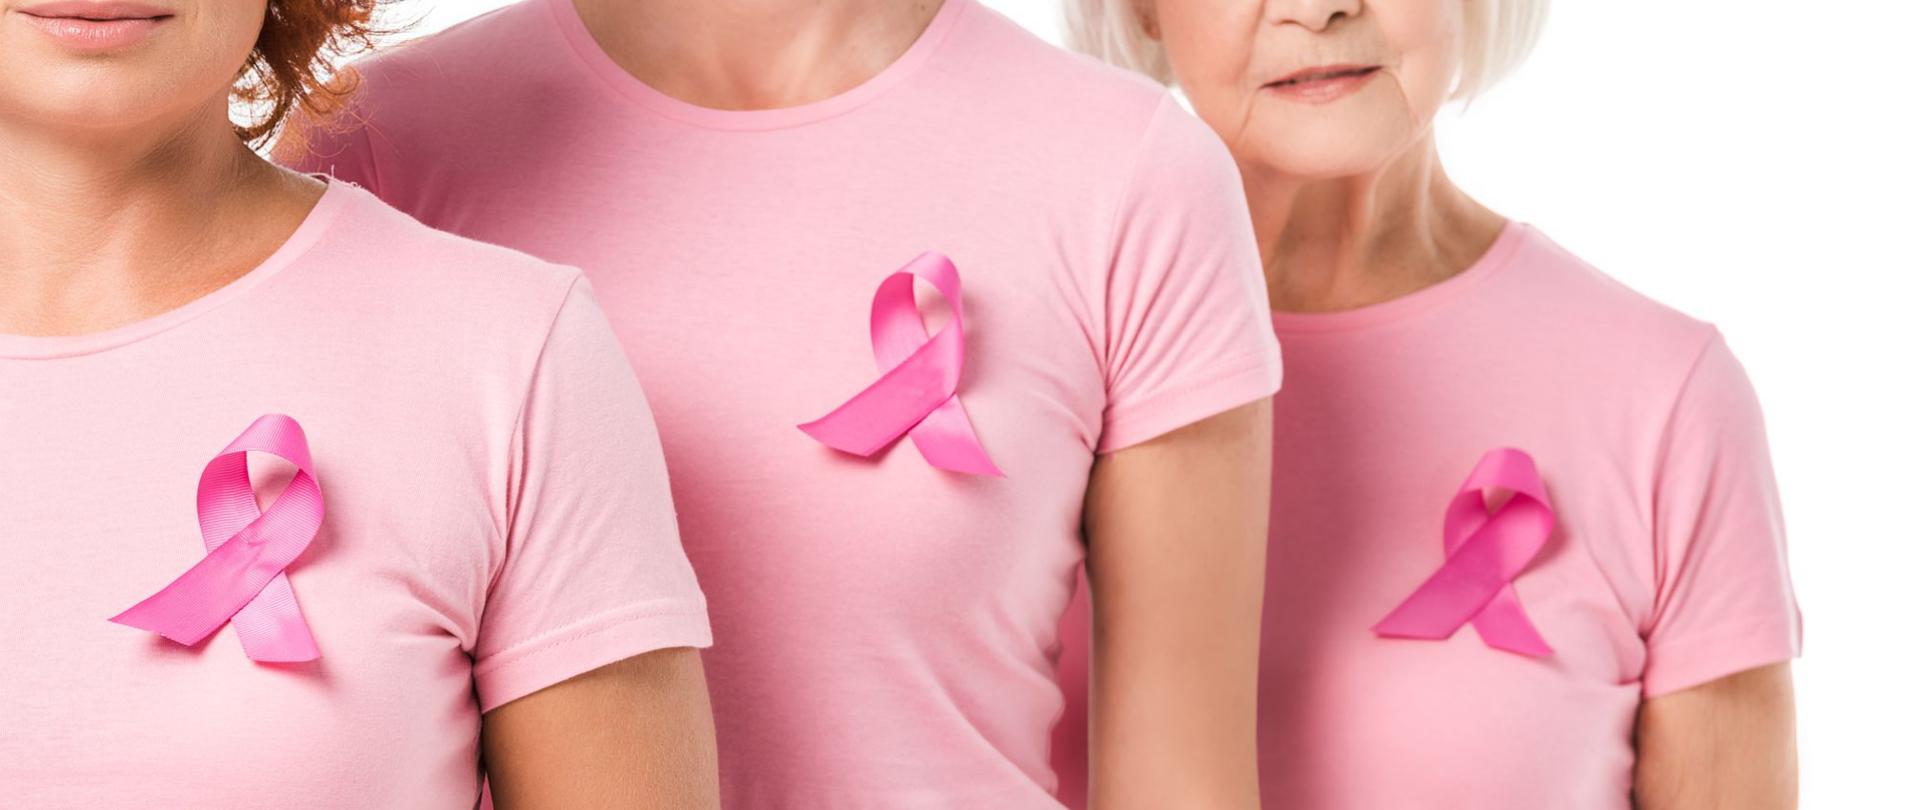 Na zdjęciu są widoczne trzy kobiety ubrane w różowe koszulki, na których są przyczepione różowe wstążki.